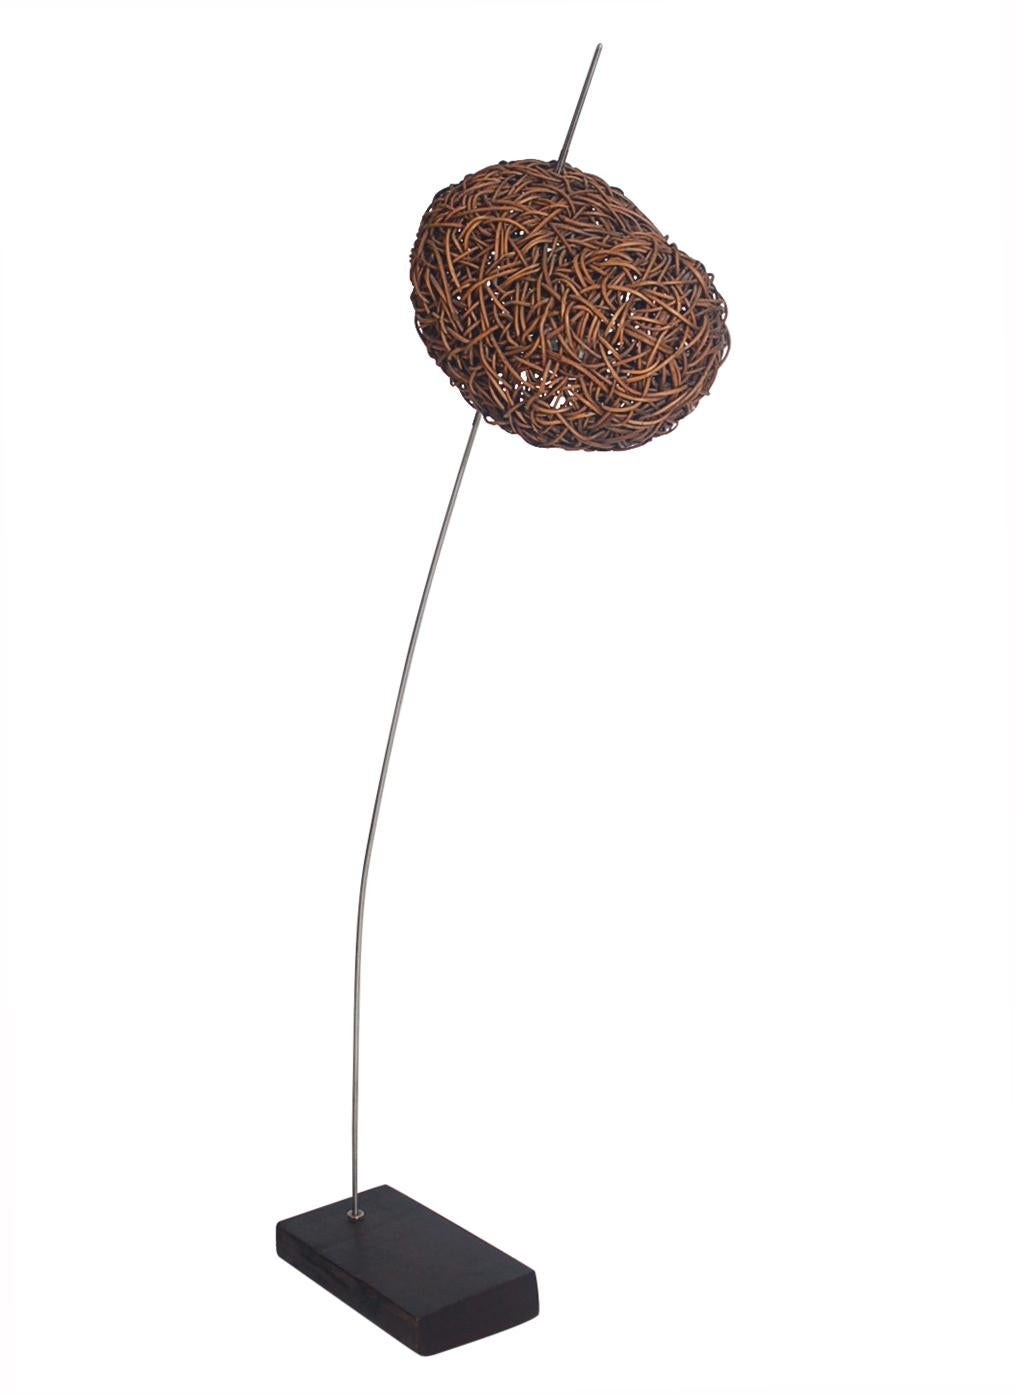 Ein unglaublich einzigartiges Design aus organischem Rattan von Udom Udomsrianan, hergestellt von Planet, 2001. Besteht aus geflochtenen Dschungelreben mit einem Sockel aus Edelstahl und patiniertem Holzblock. Auslaufende Produktion mit begrenzter